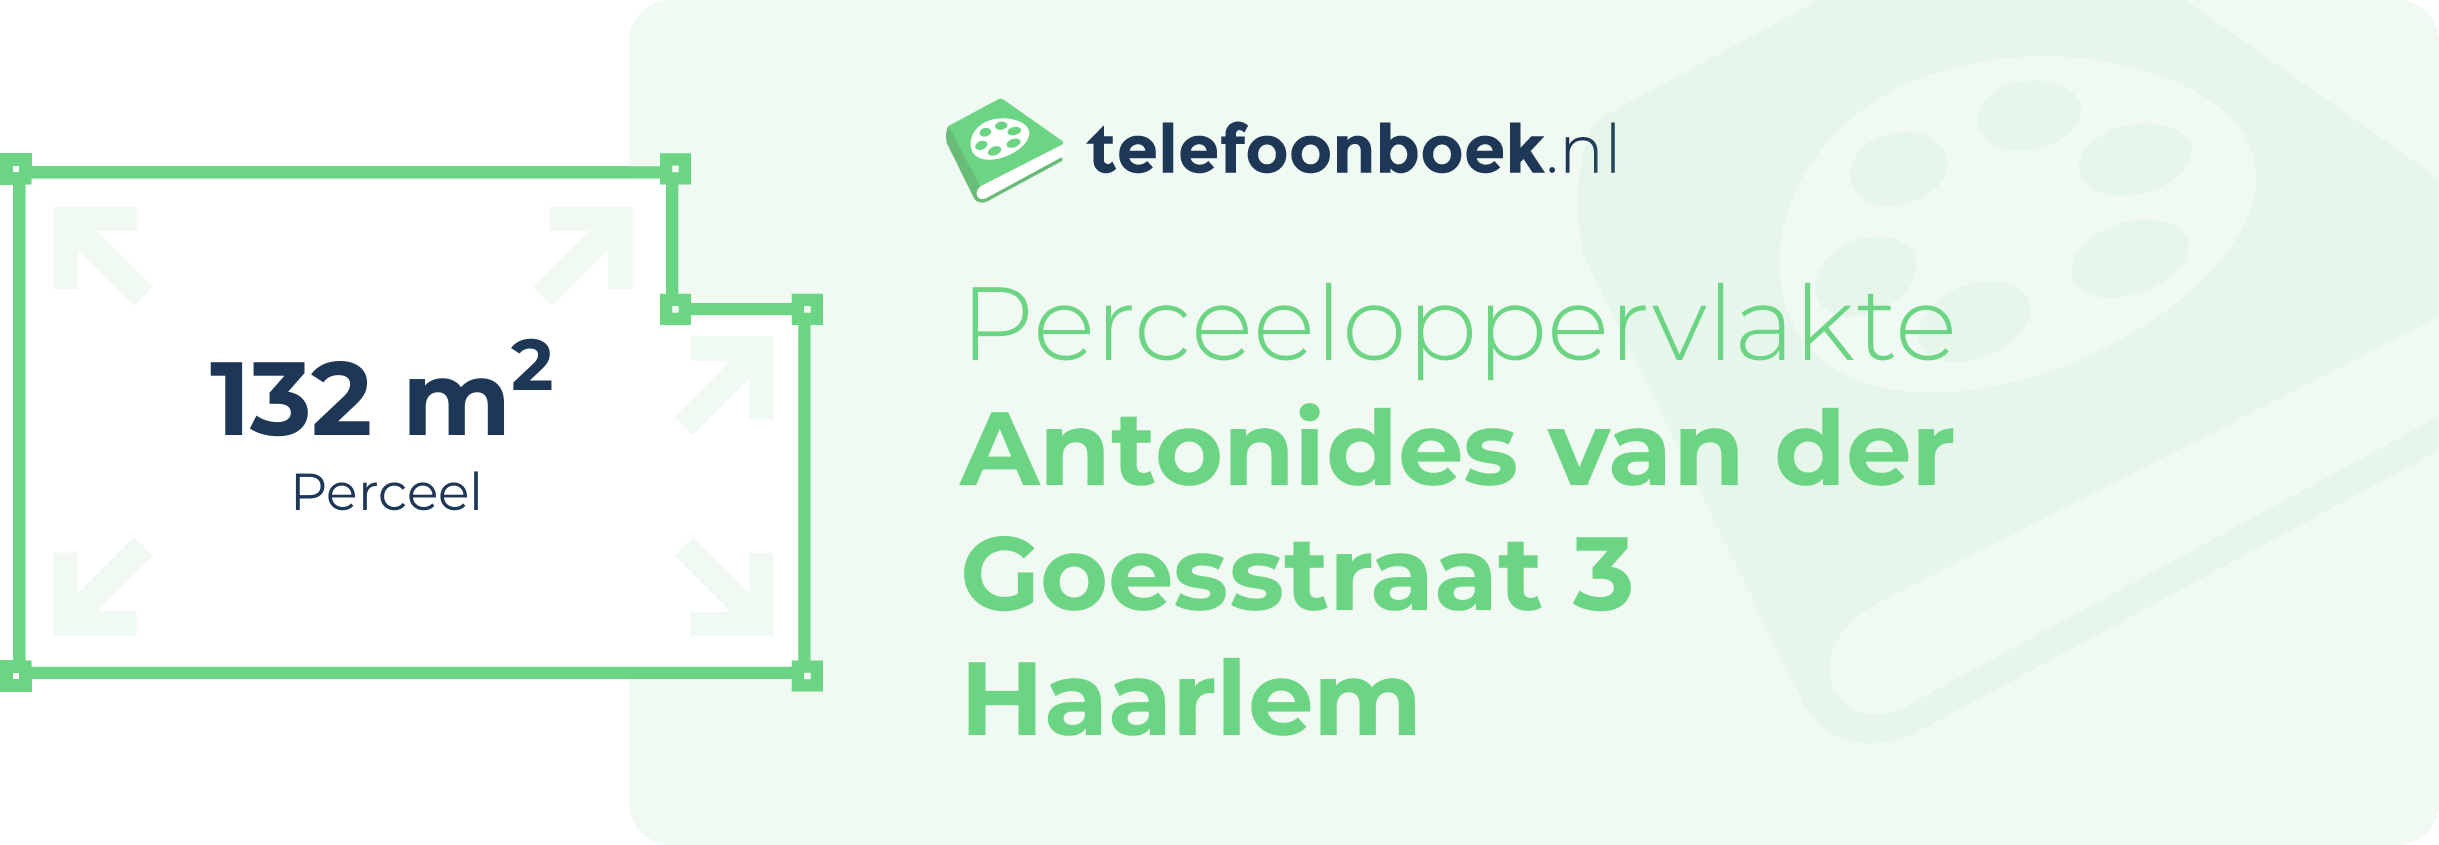 Perceeloppervlakte Antonides Van Der Goesstraat 3 Haarlem